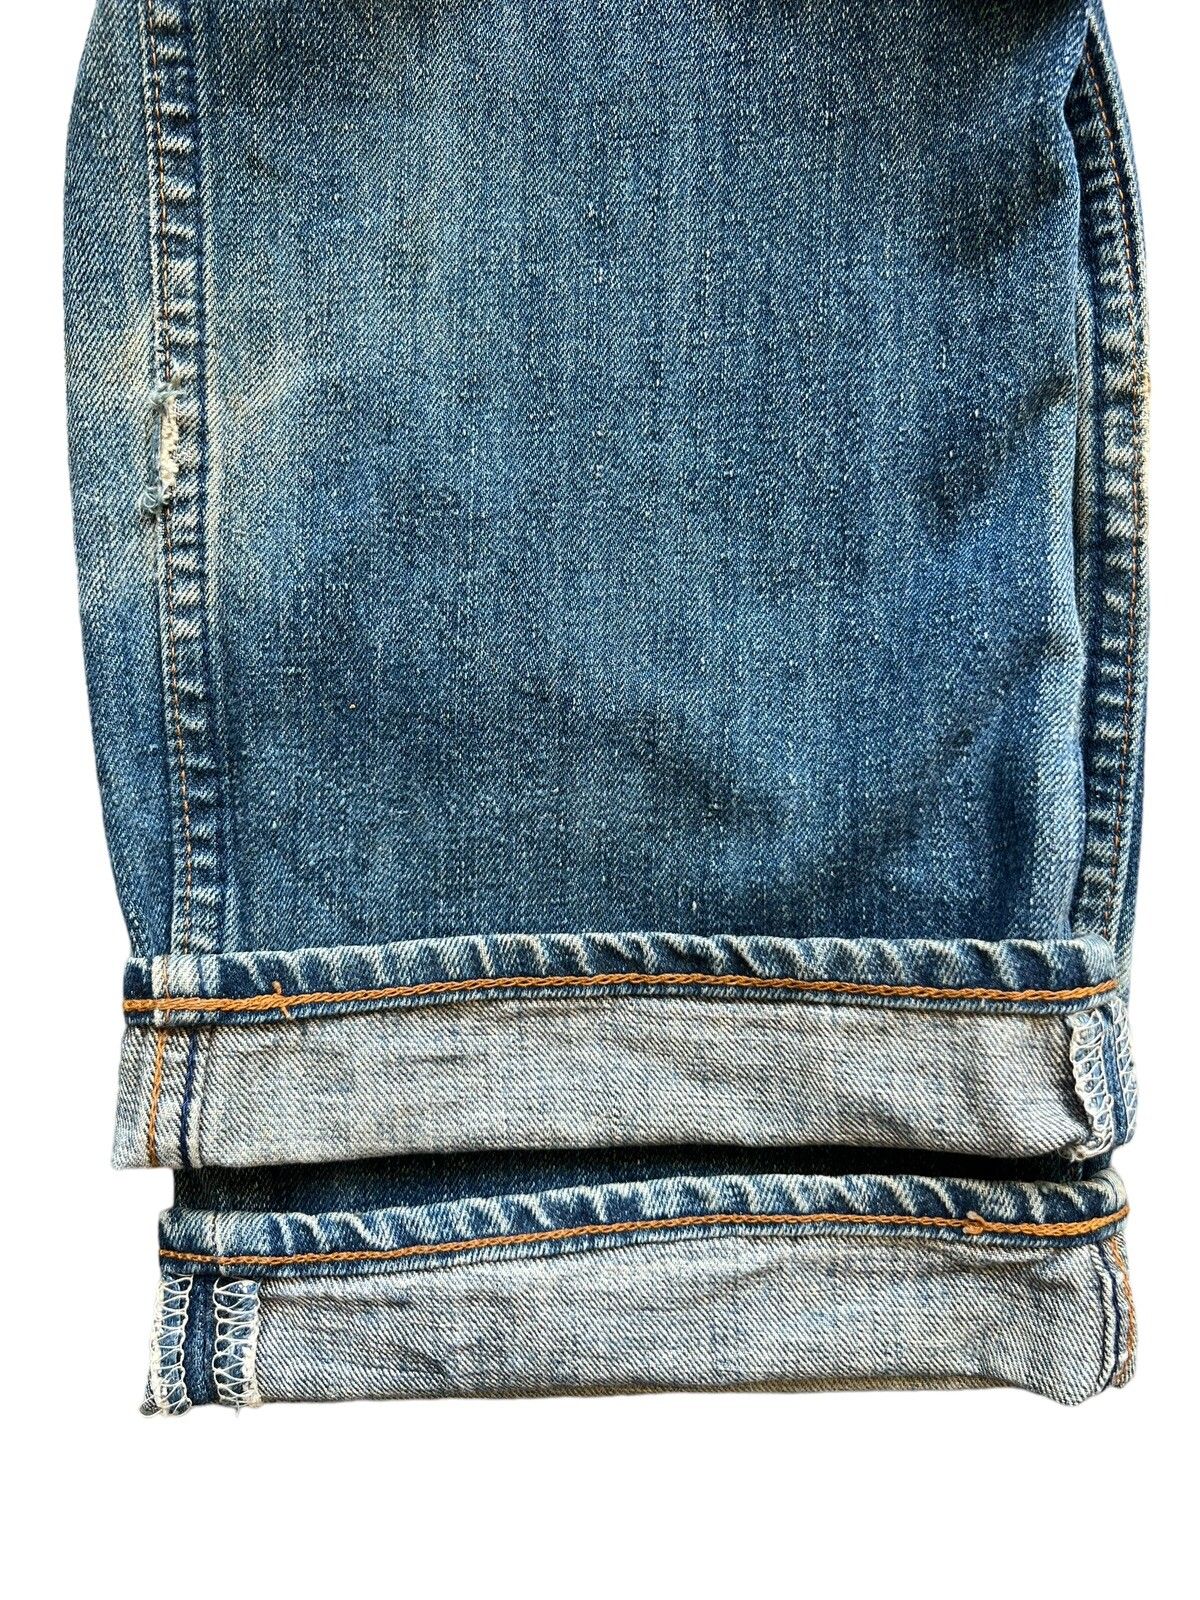 Vintage 90s Levis Distressed Mudwash Patch Denim Jeans 30x35 - 10